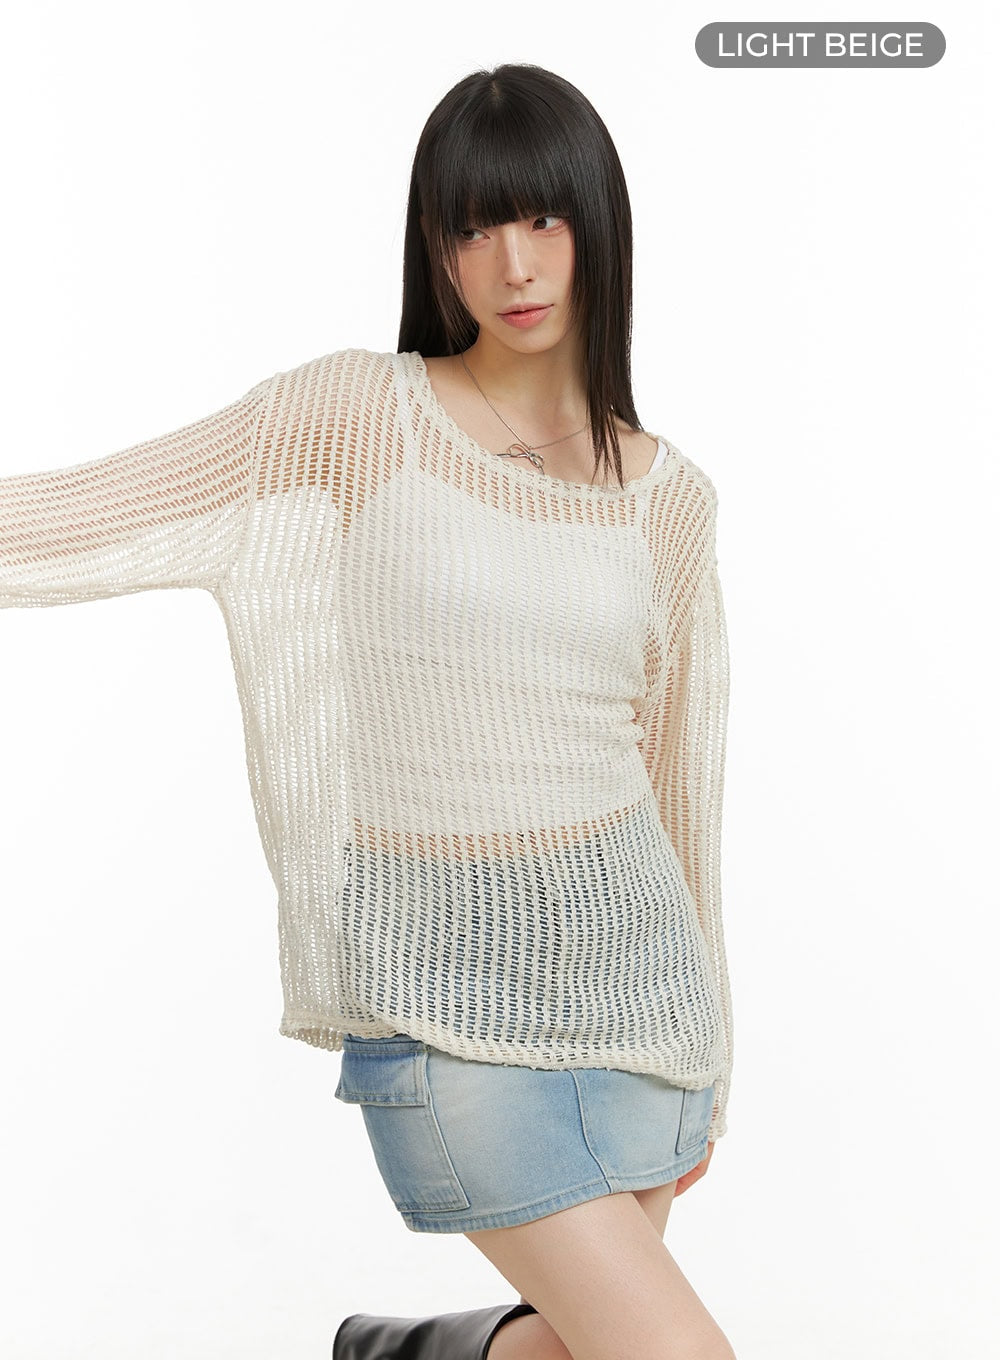 summer-mesh-knit-sweater-cu424 / Light beige